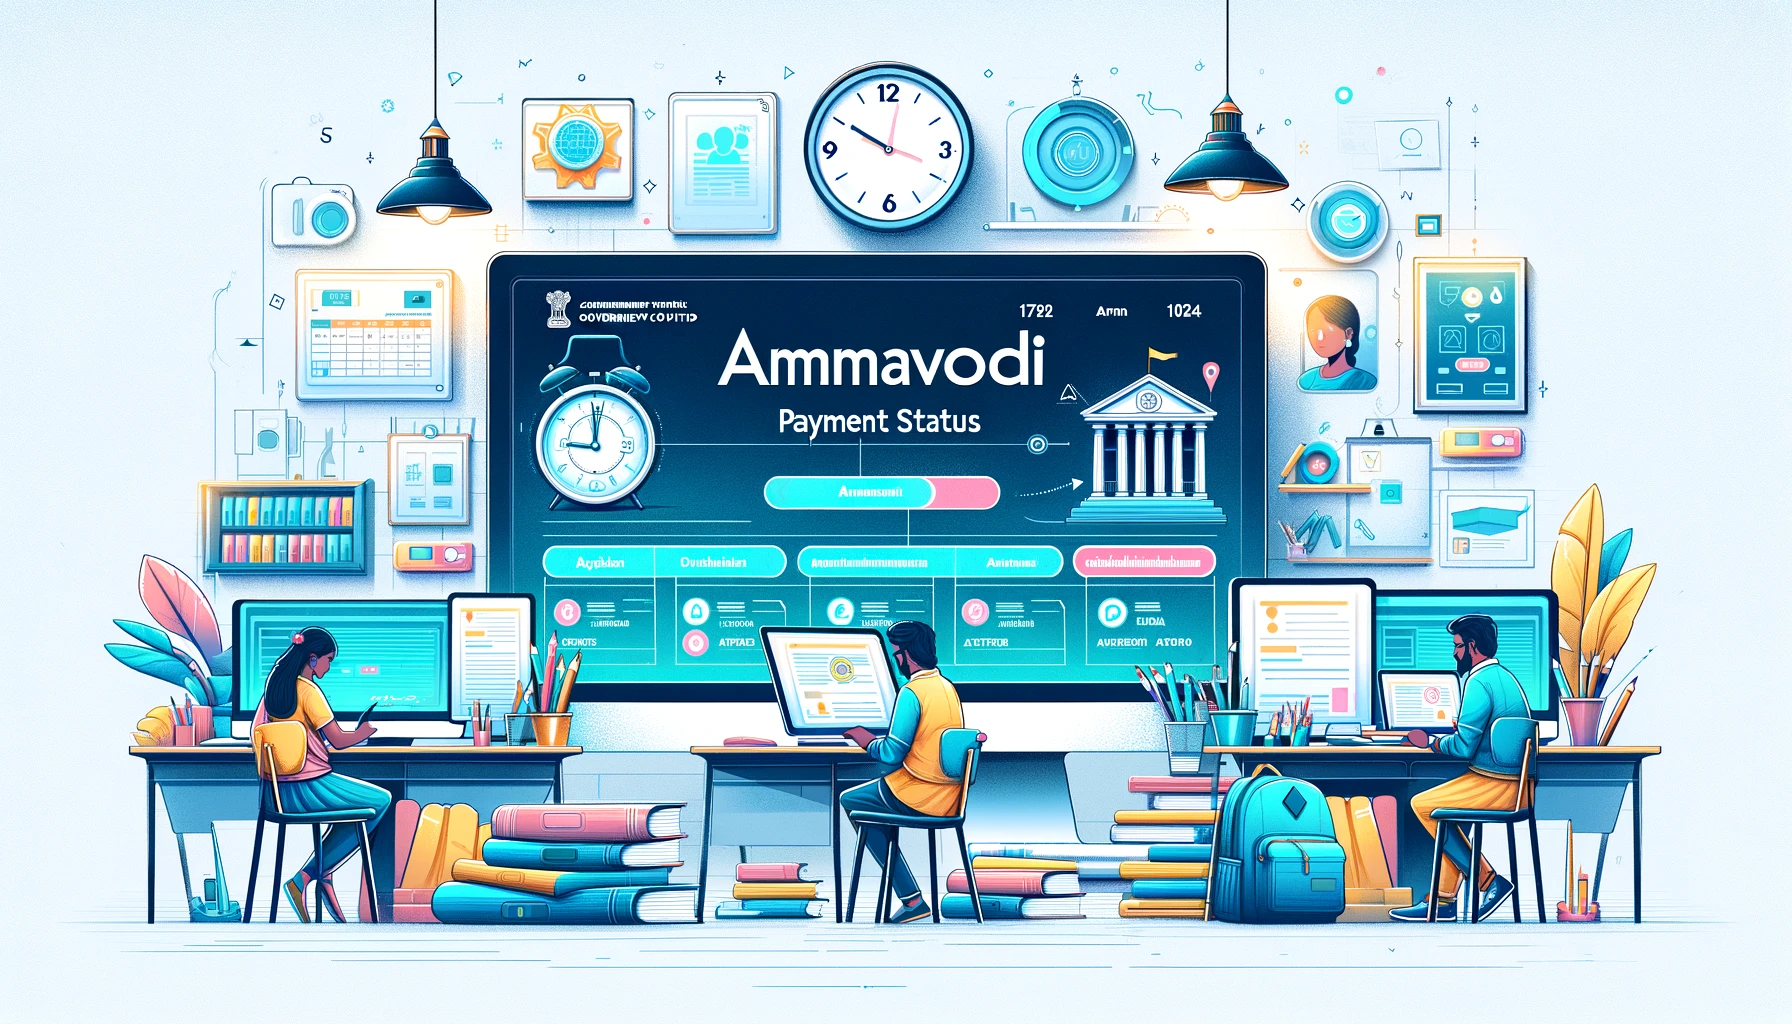 Ammavodi Payment Status